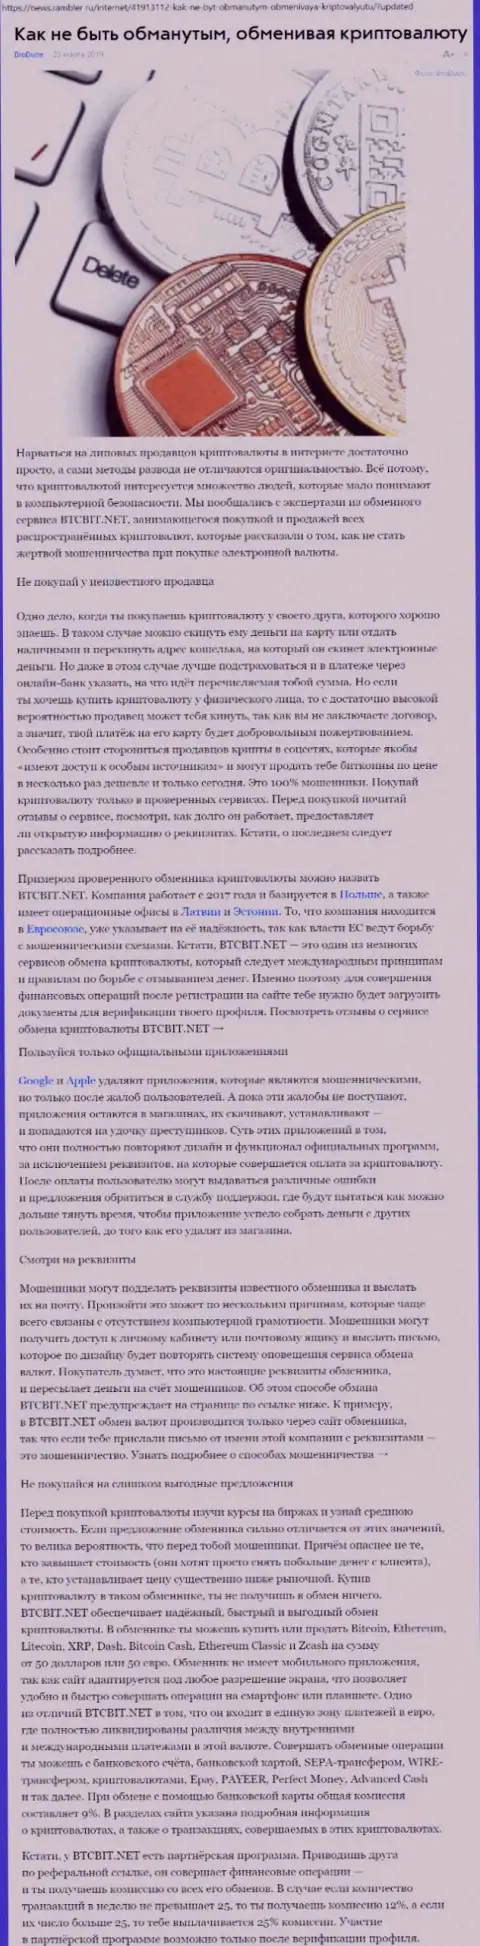 Статья об обменнике BTC Bit на news rambler ru